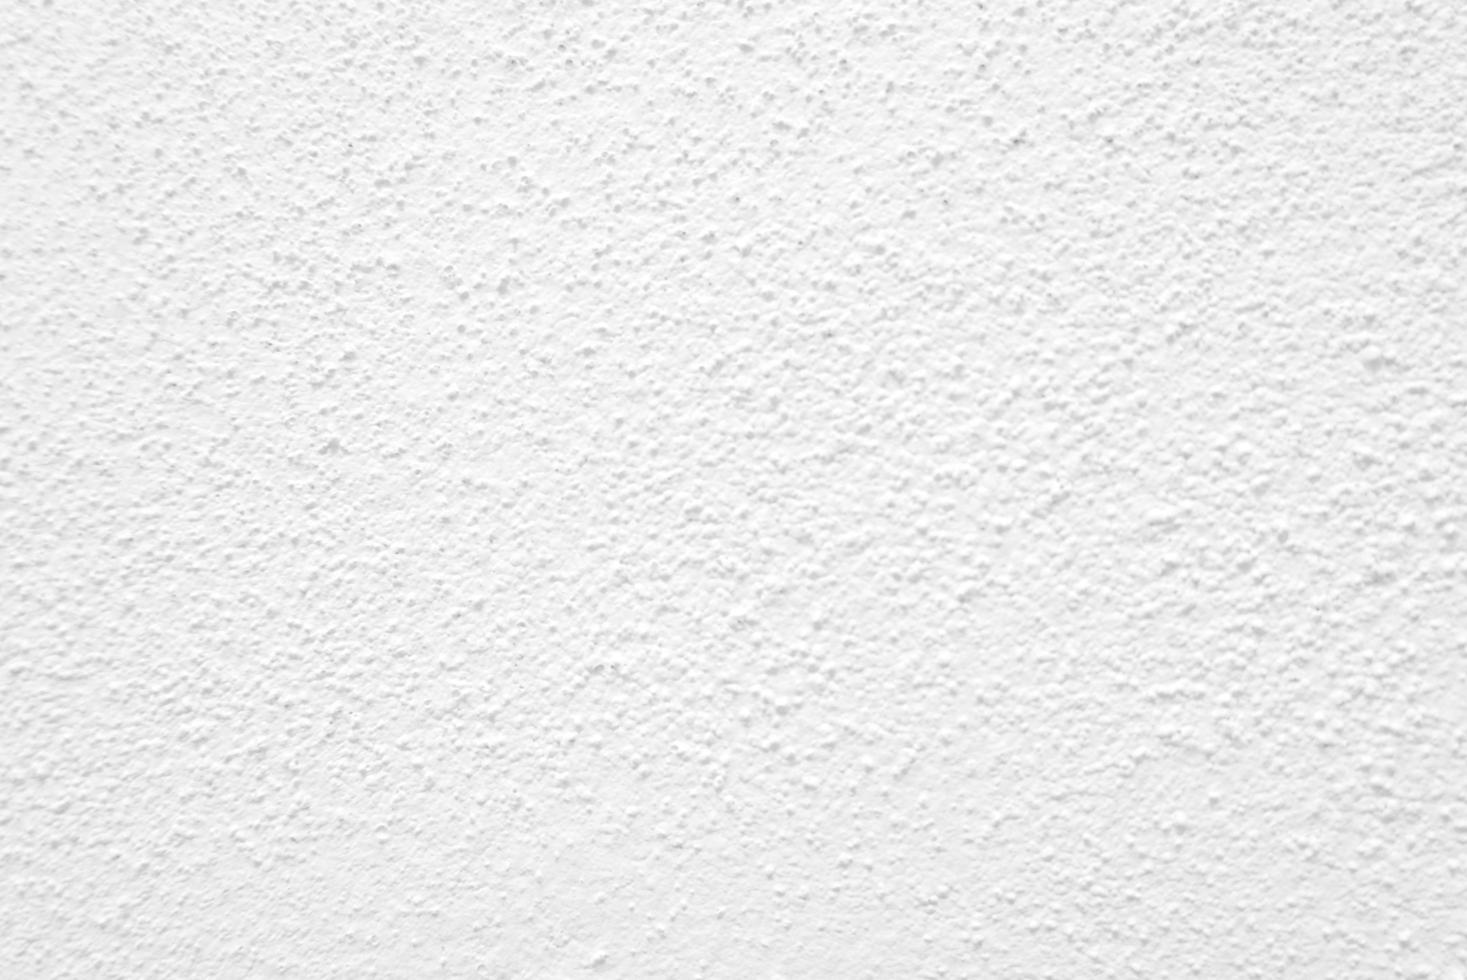 textura transparente de pared de cemento blanco una superficie rugosa, con  espacio para texto, para un fondo. 10552146 Foto de stock en Vecteezy